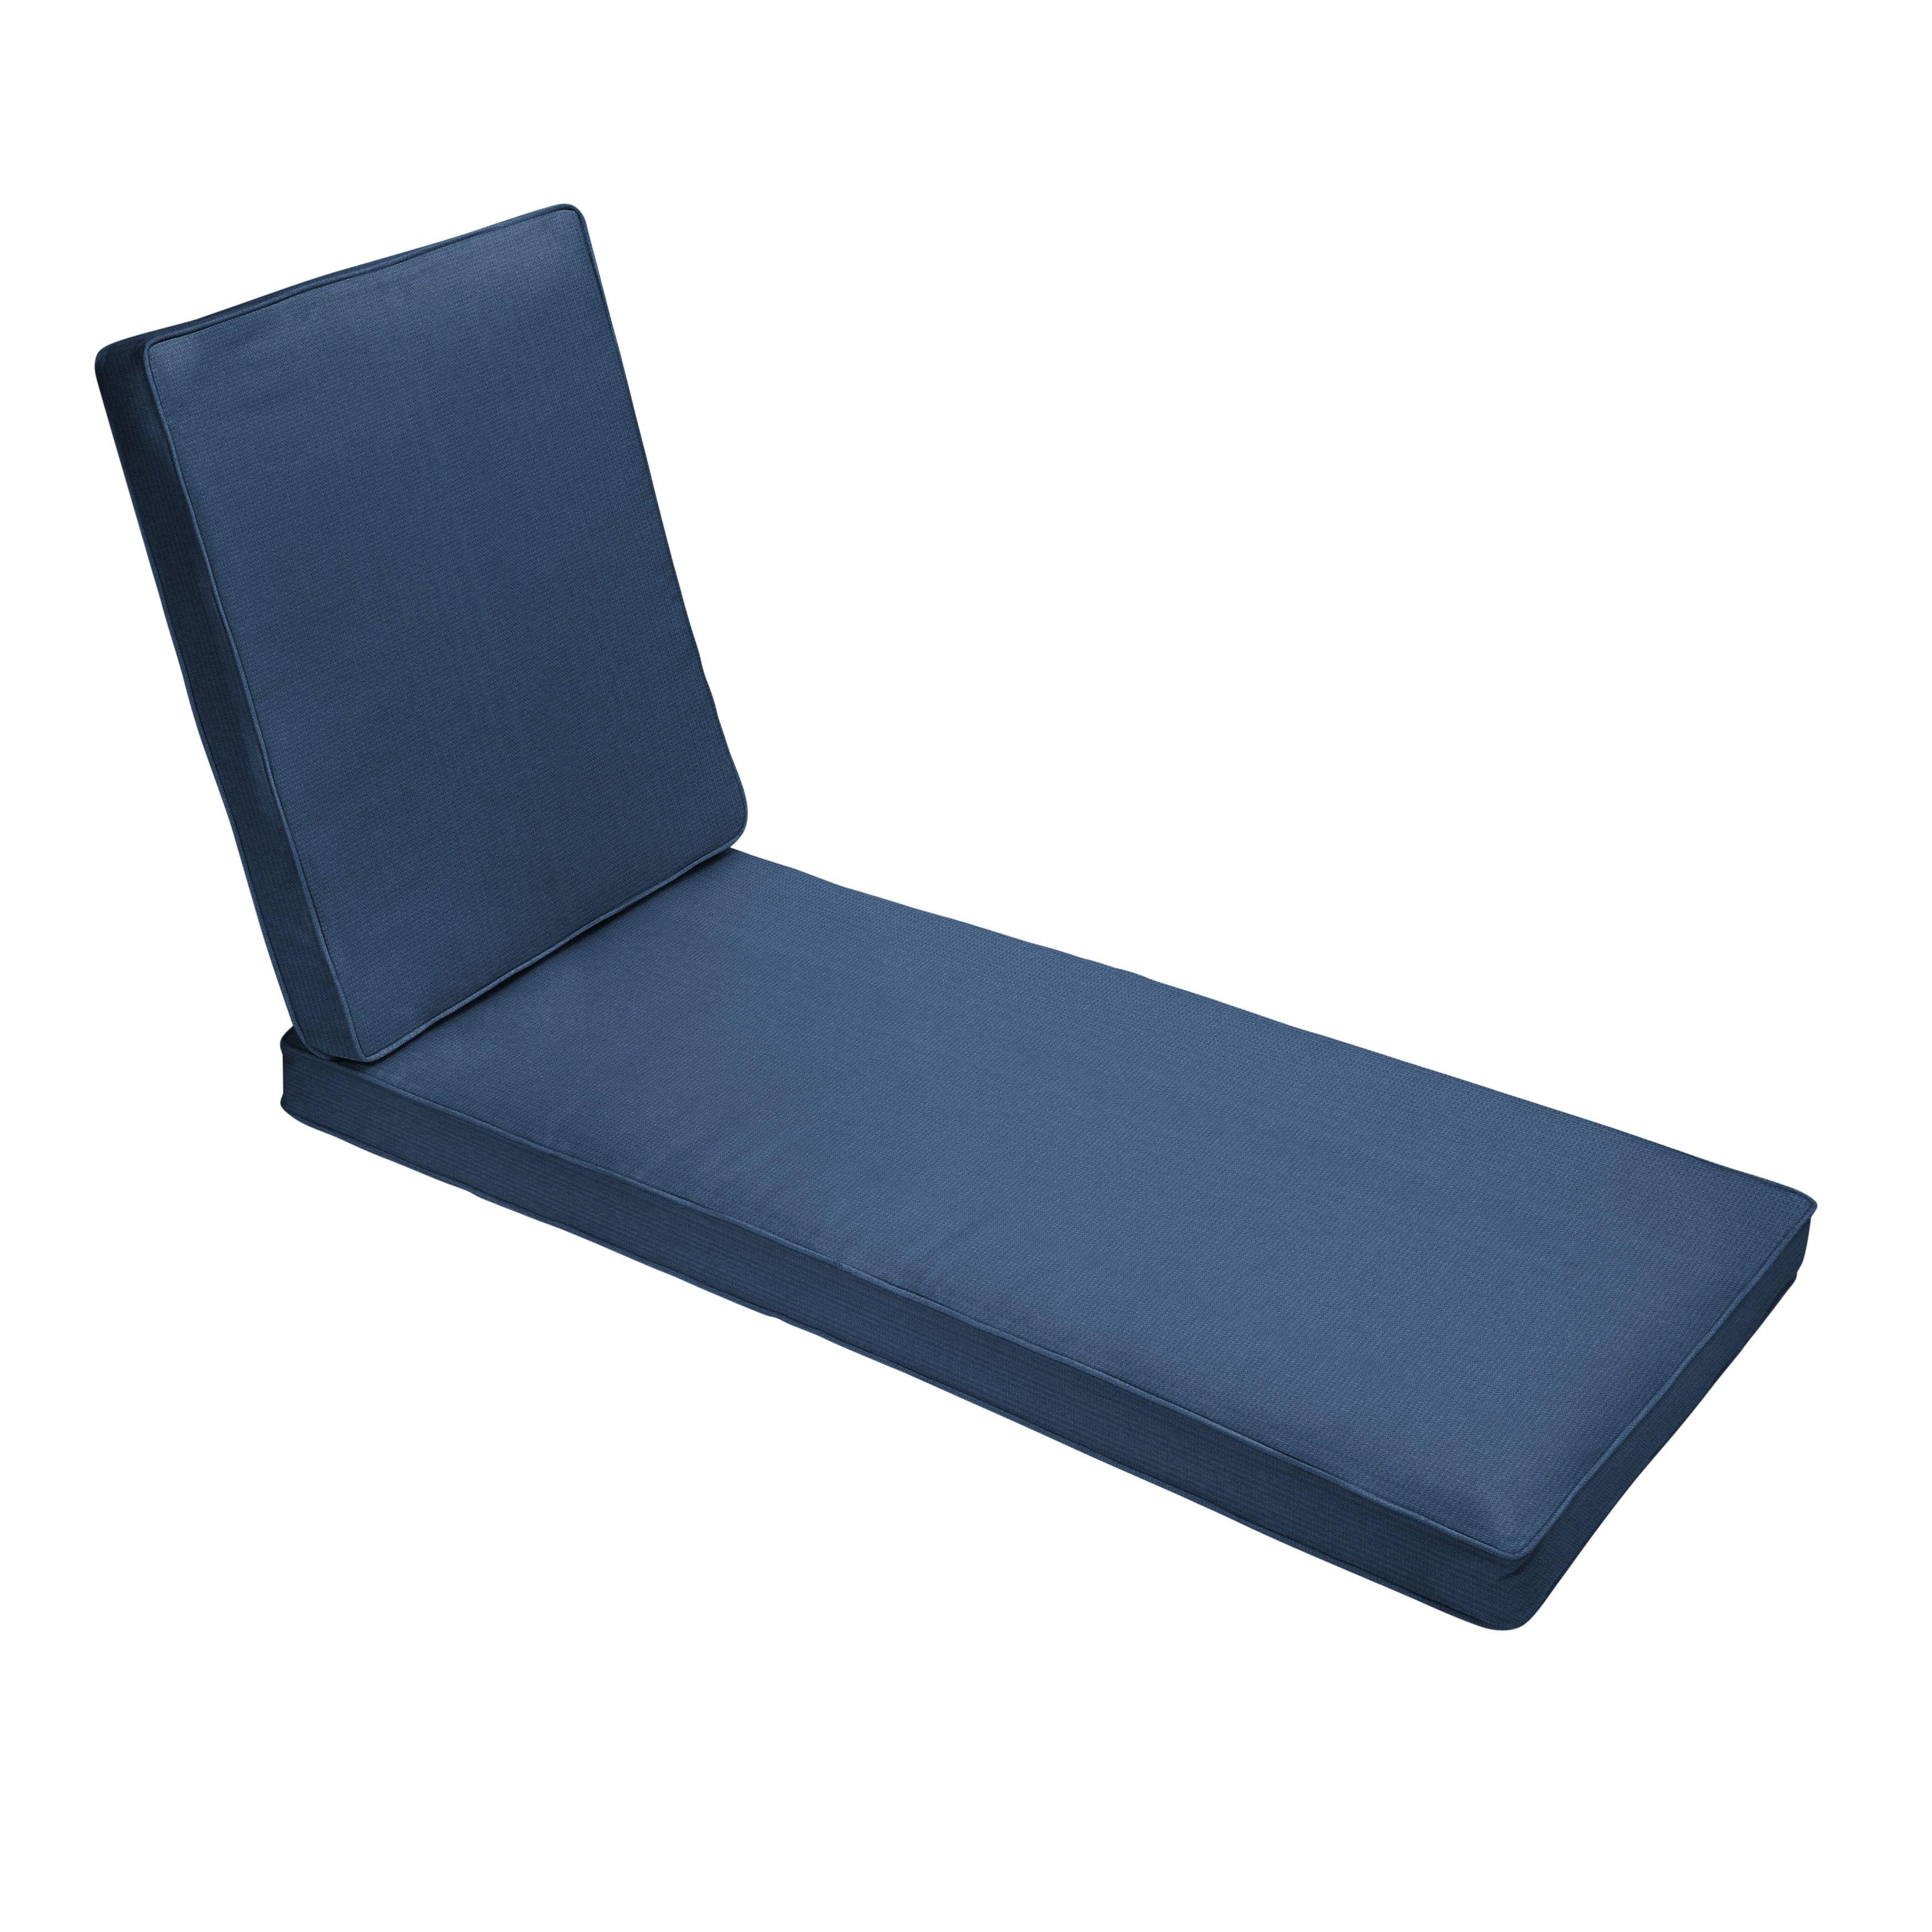 Outdura Chaise Lounge Cushion - Sorra Home